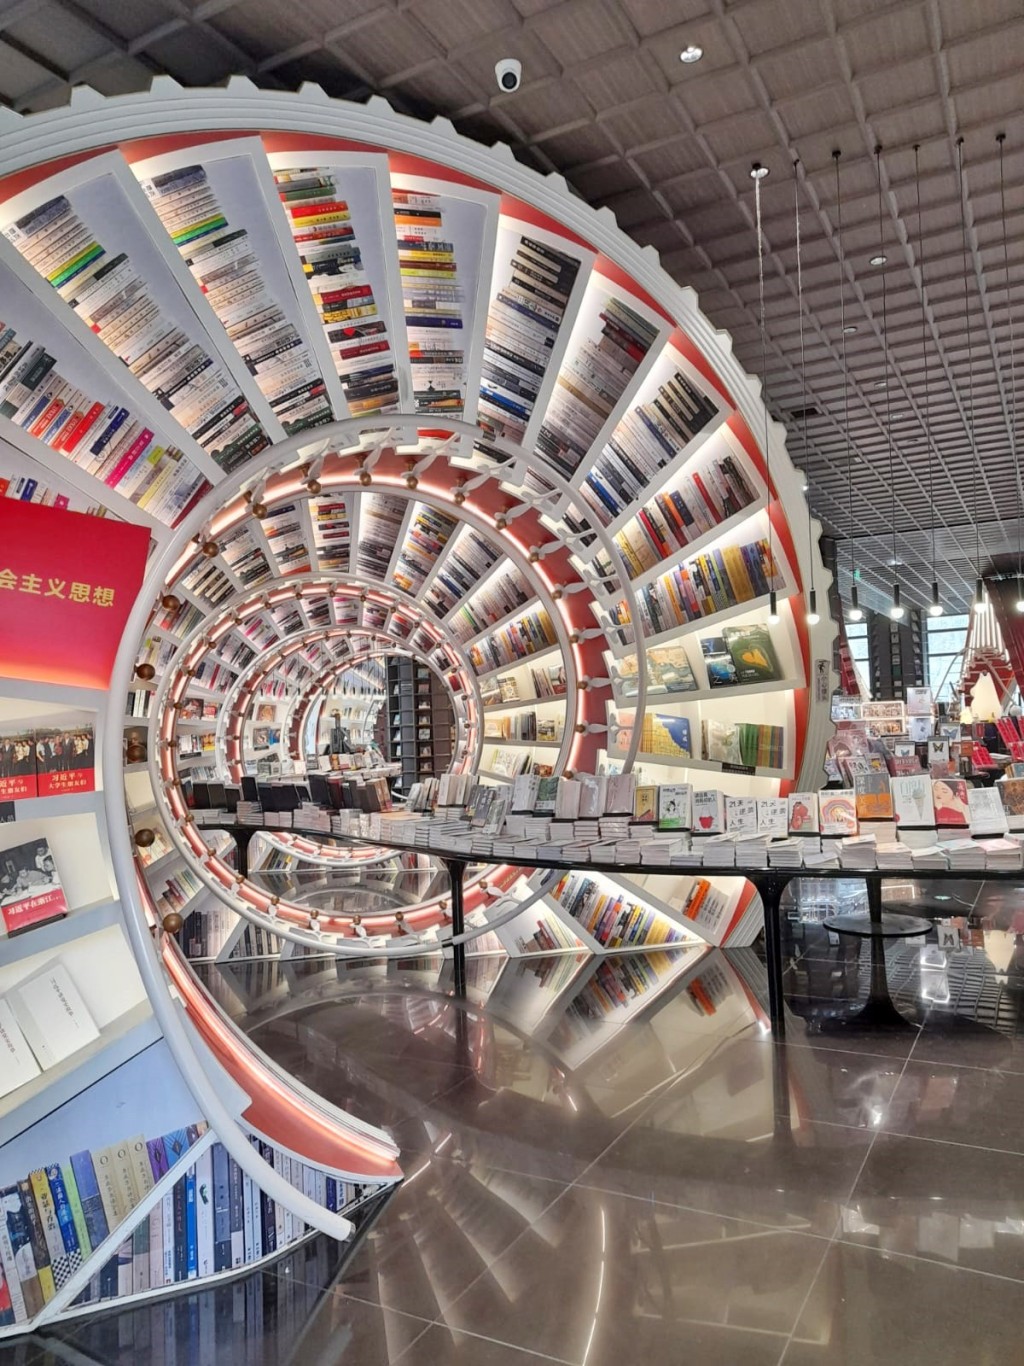 深圳锺书阁，以奇幻的红色巨型螺旋楼梯书架贯穿店内，是游人打卡热点。